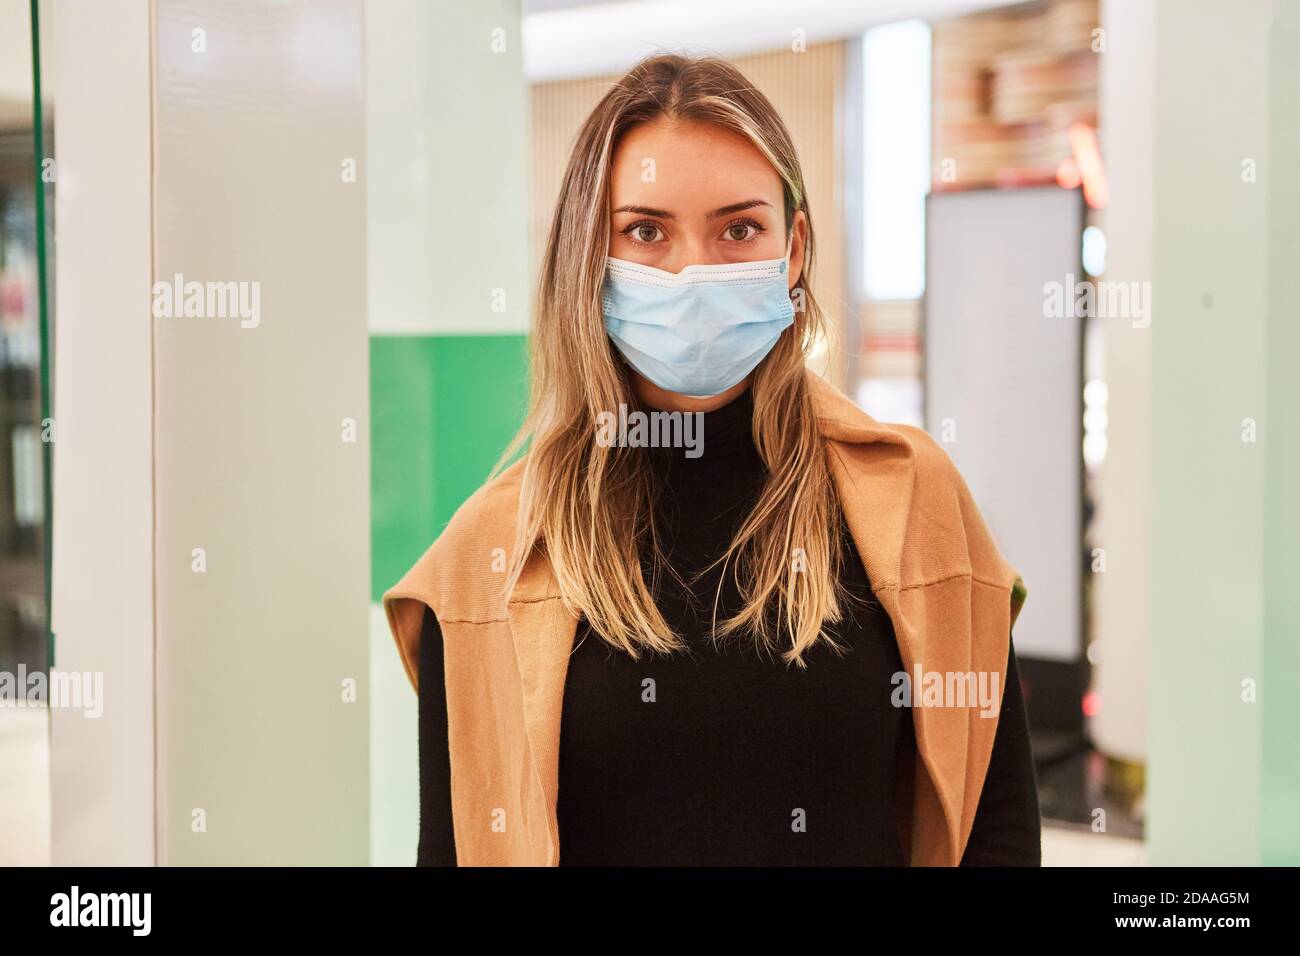 Cliente con maschera a causa della pandemia di Covid-19 nel centro commerciale durante lo shopping Foto Stock